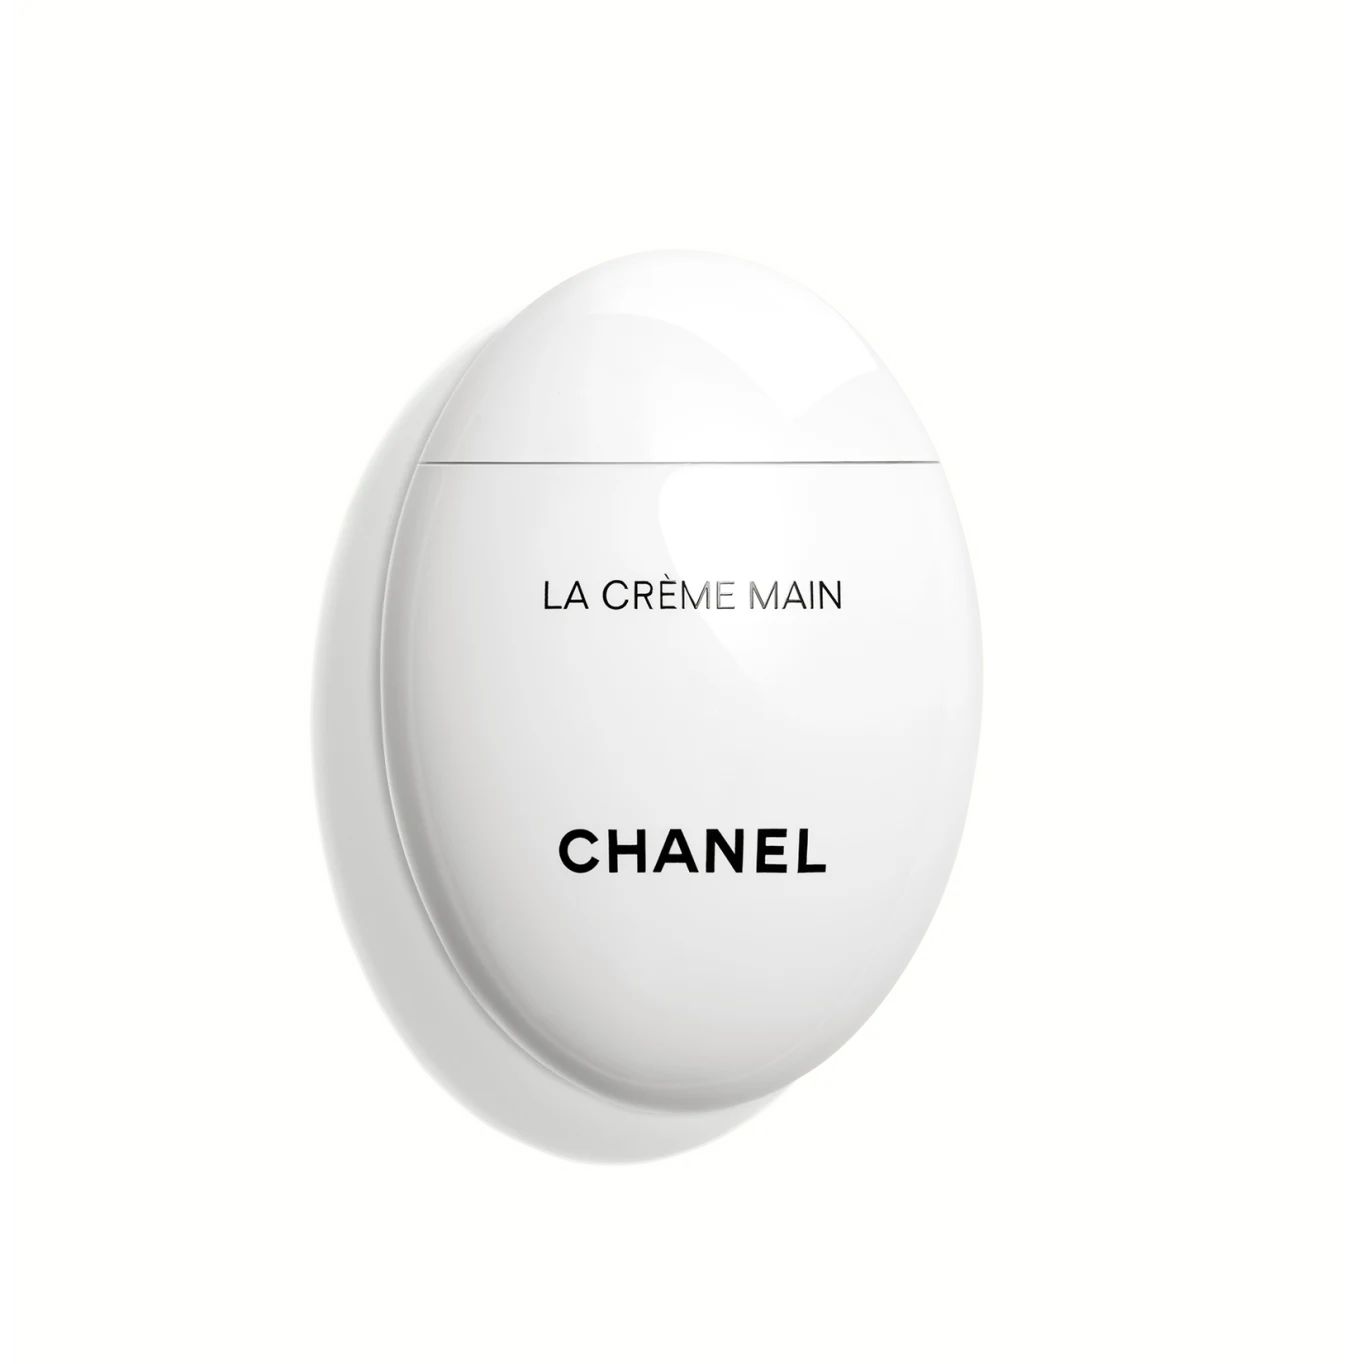 LA CRÈME MAIN

            
            Nourish - Soften - Brighten | Chanel, Inc. (US)